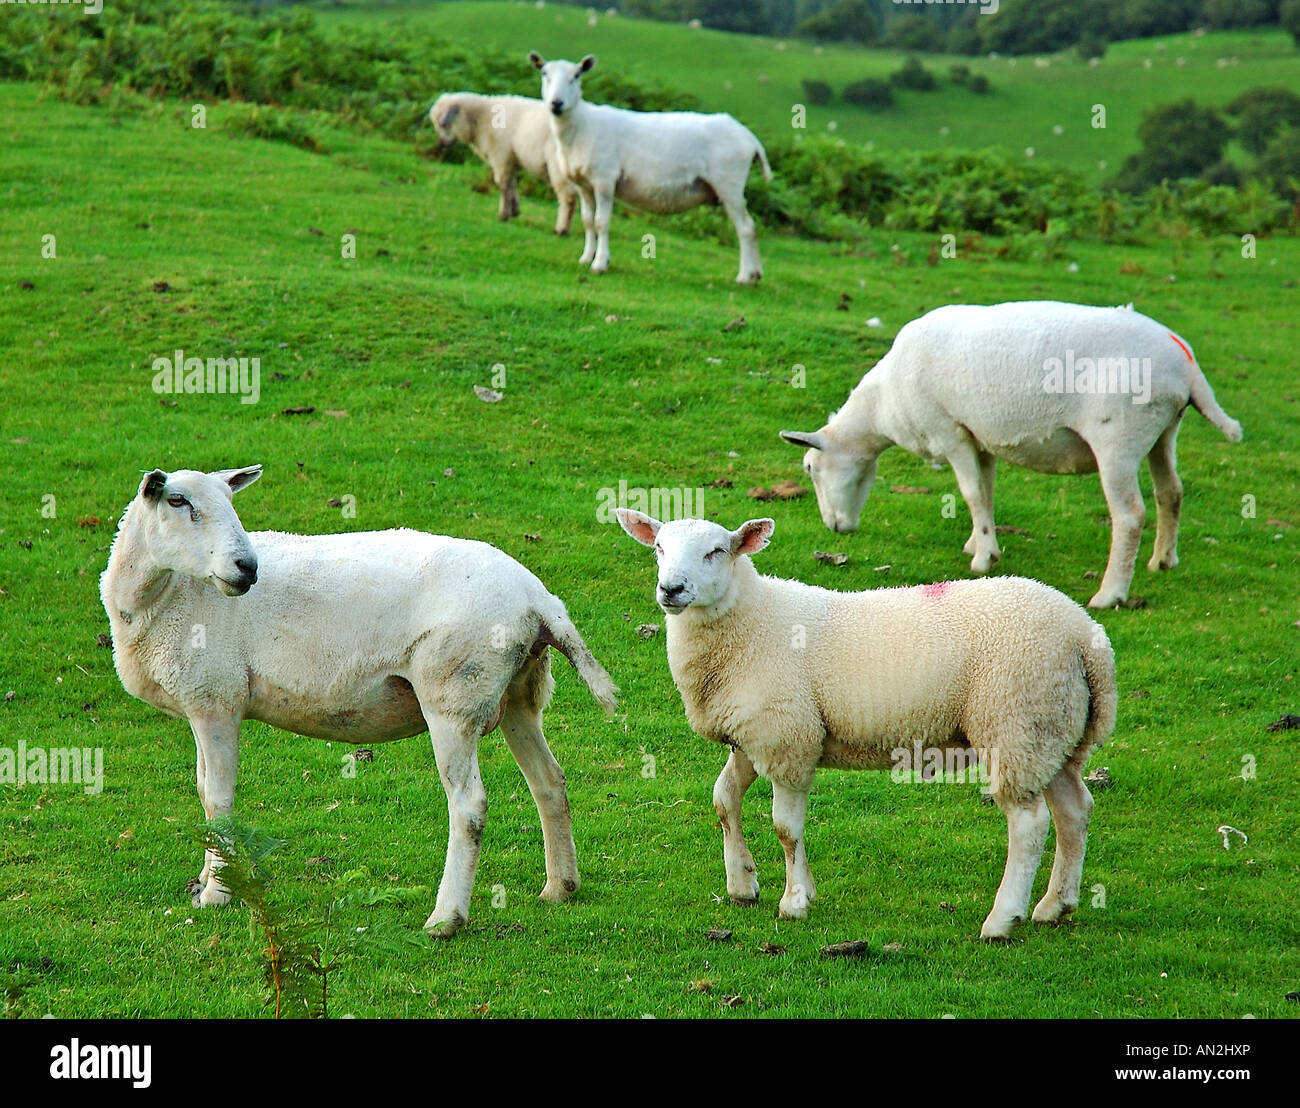 Yorkshire, Sheep Grazing Stock Photo